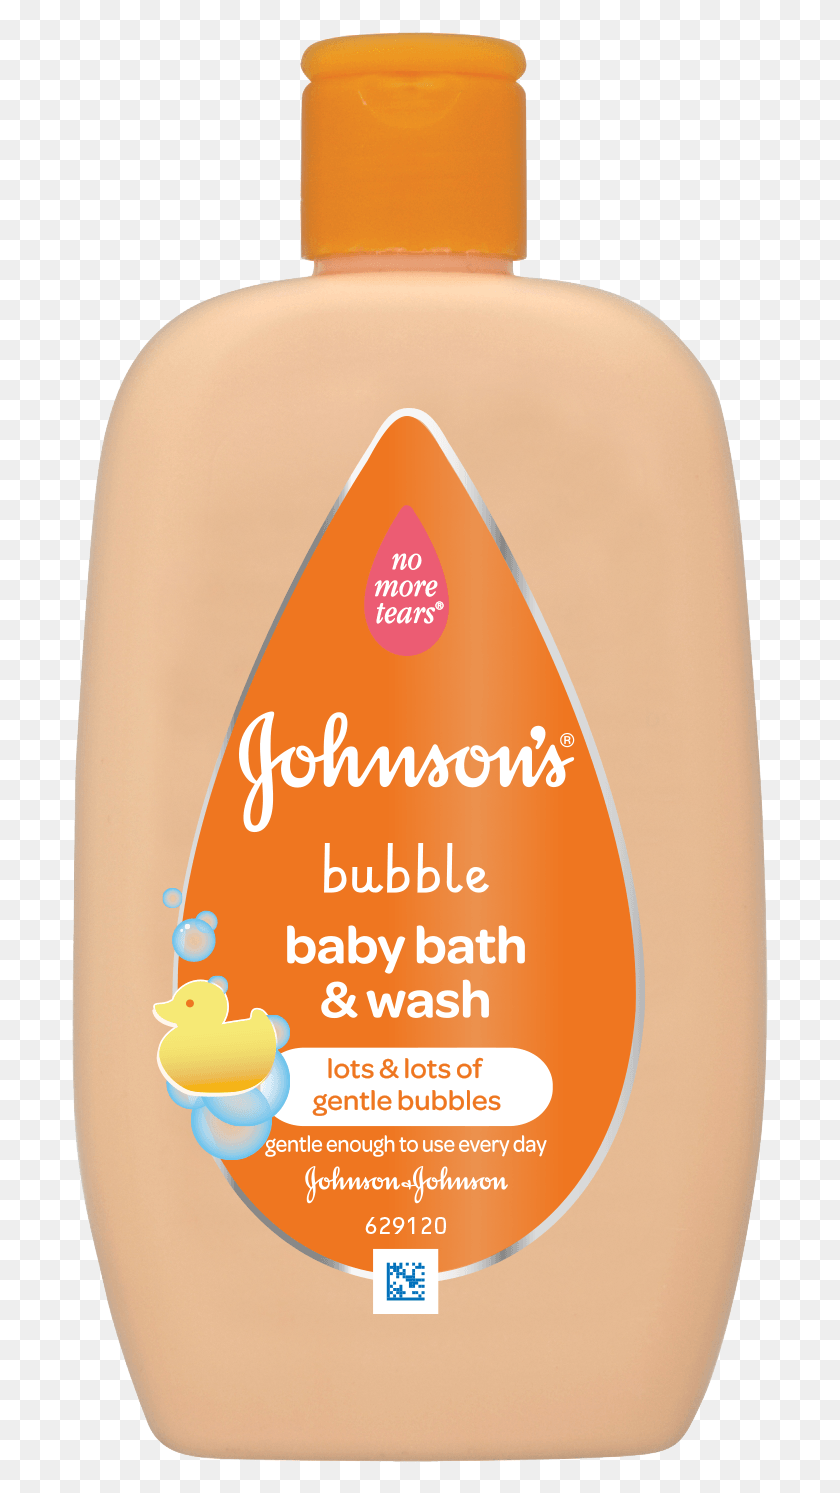 697x1433 Descargar Png / Baño De Burbujas 2En1 Para Bebés Y Lavado Johnson And Johnson, Botella, Champú, Loción Hd Png